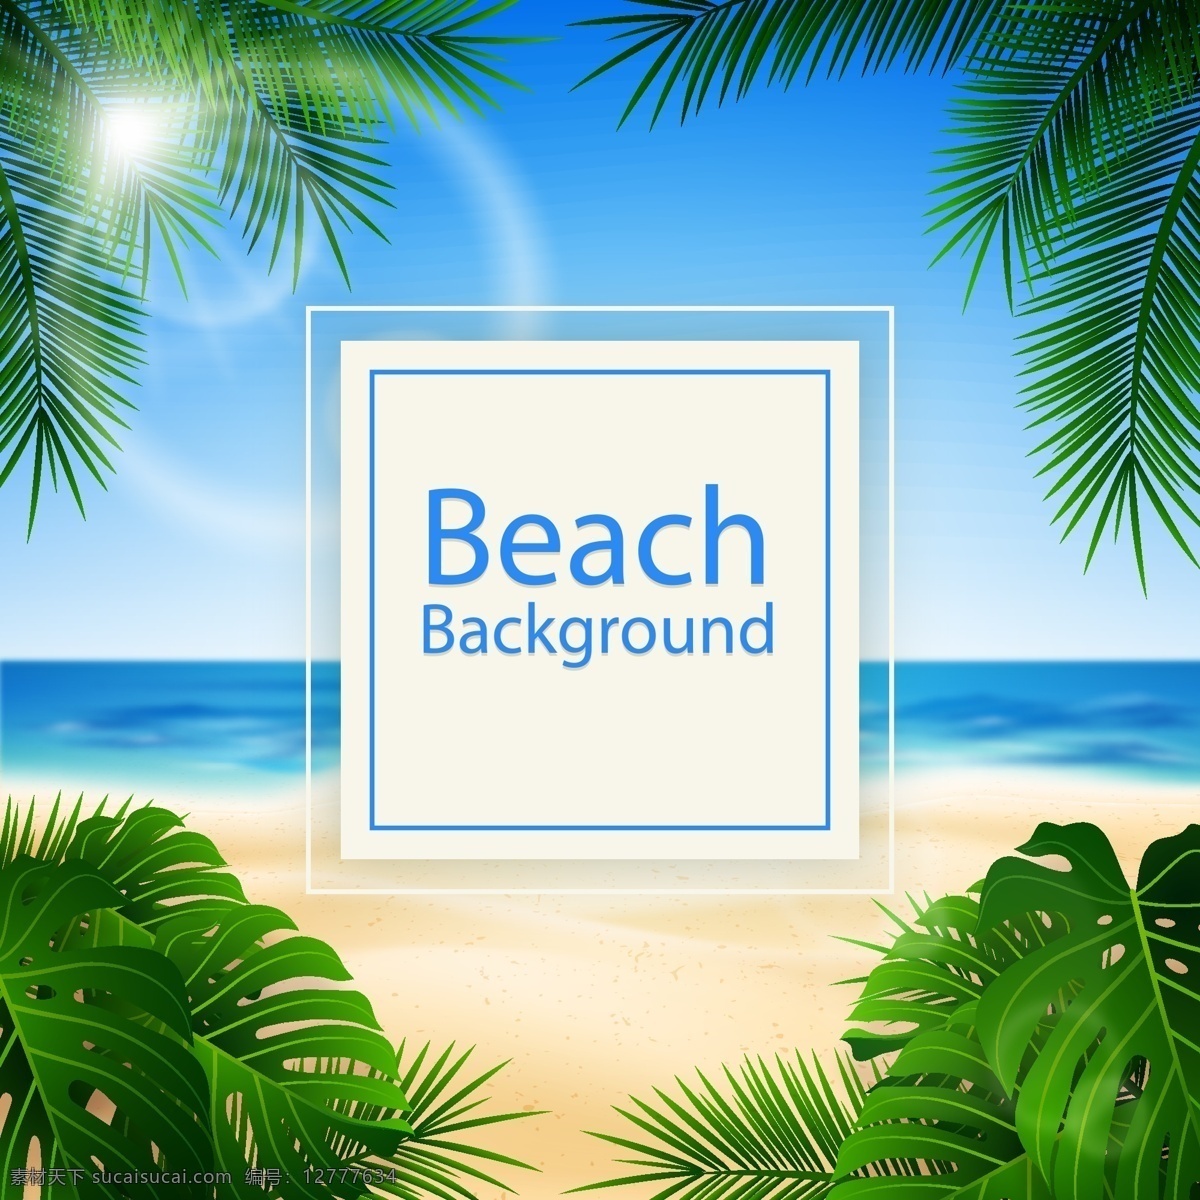 海边椰子树 阳光明媚 海滩 沙滩 度假 晒太阳 日光浴 椰子树 自然景观 自然风光